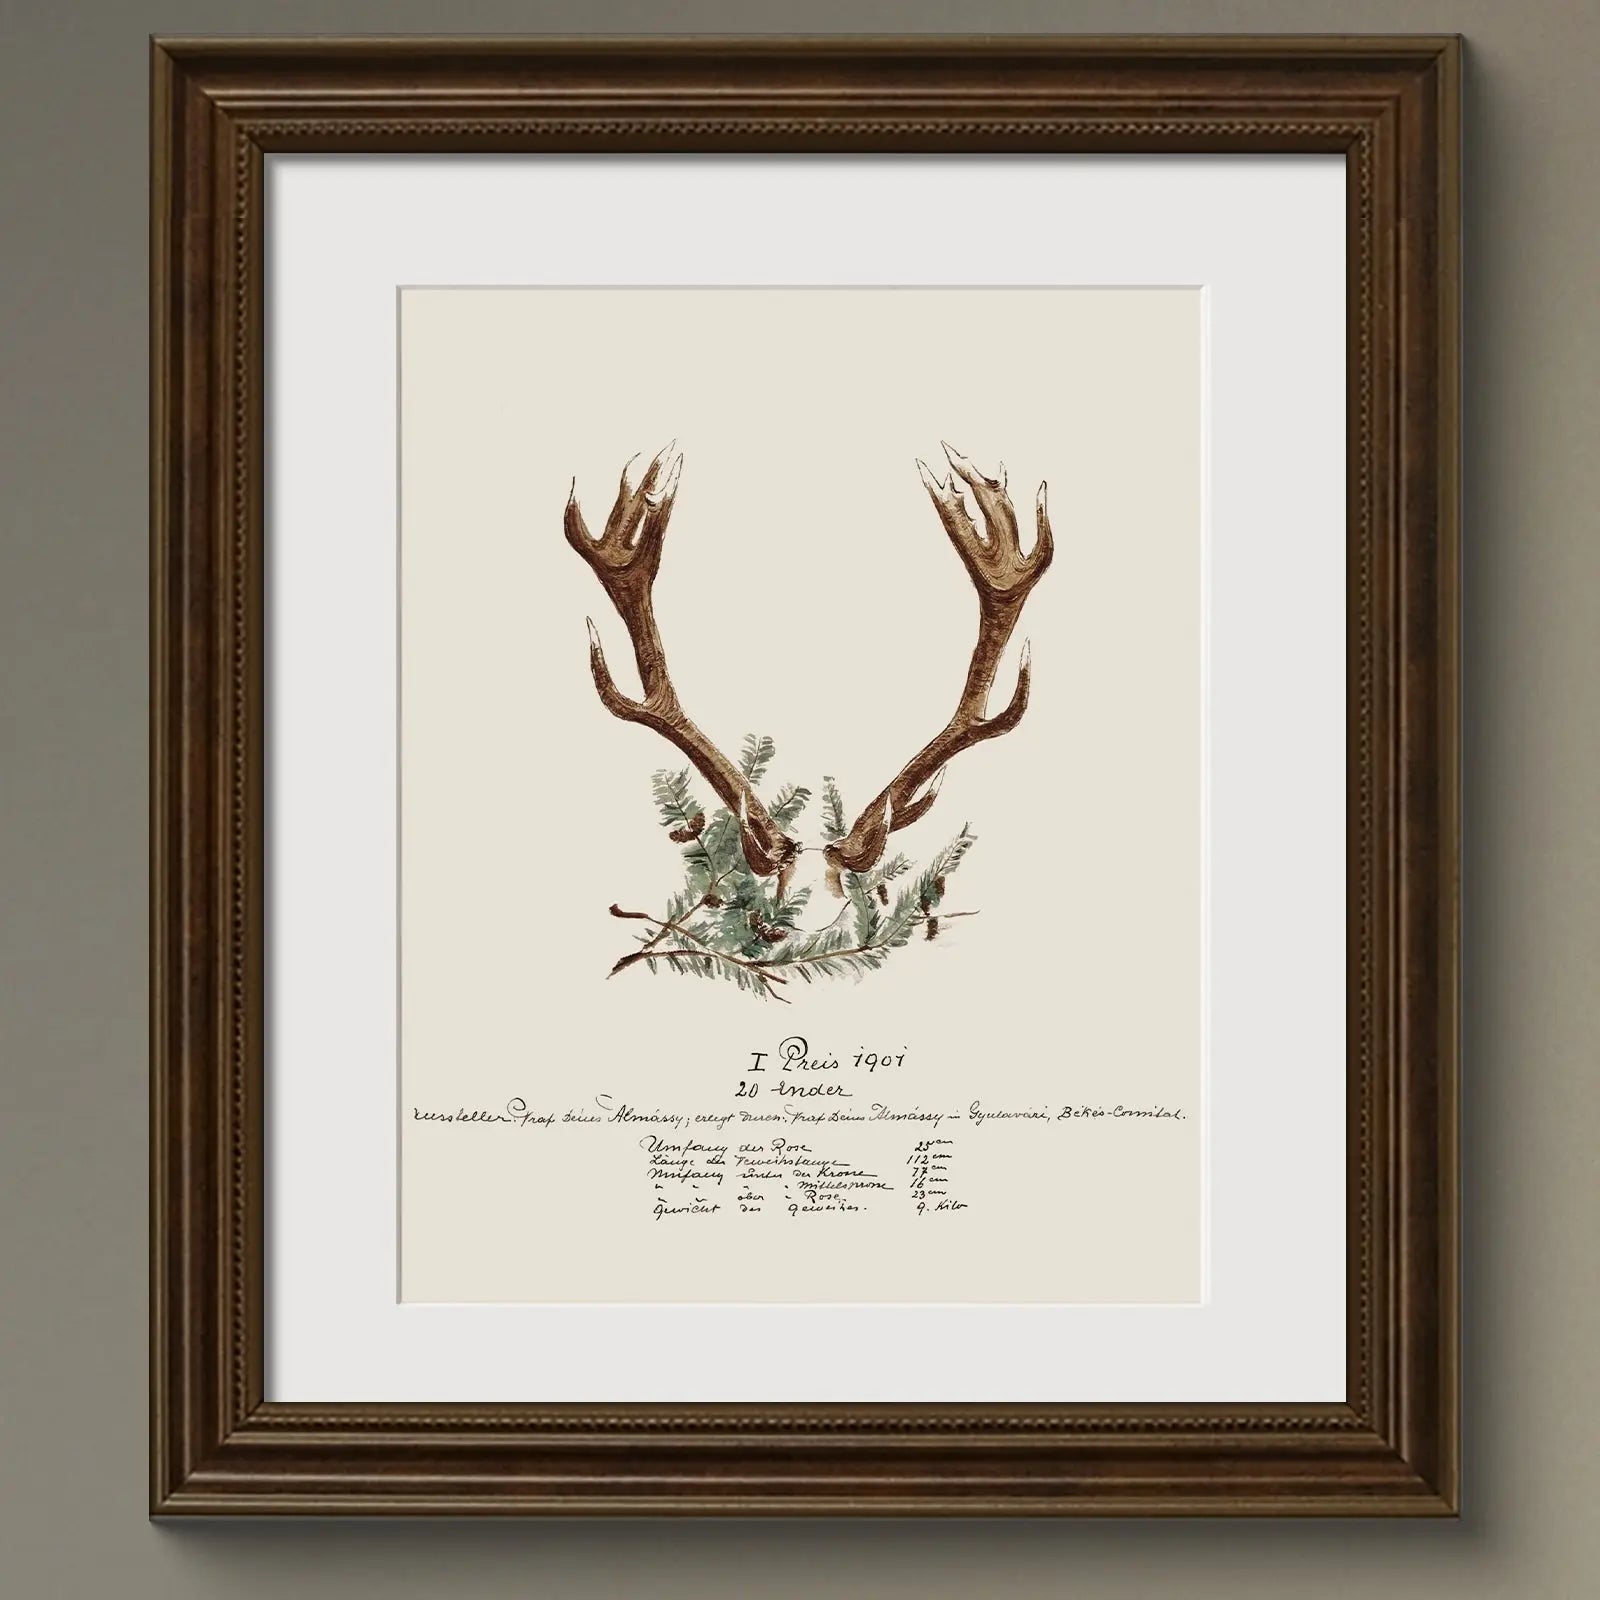 Vintage Naturalist Illustrations: 19th c. Trophy Antlers - Emblem Atelier